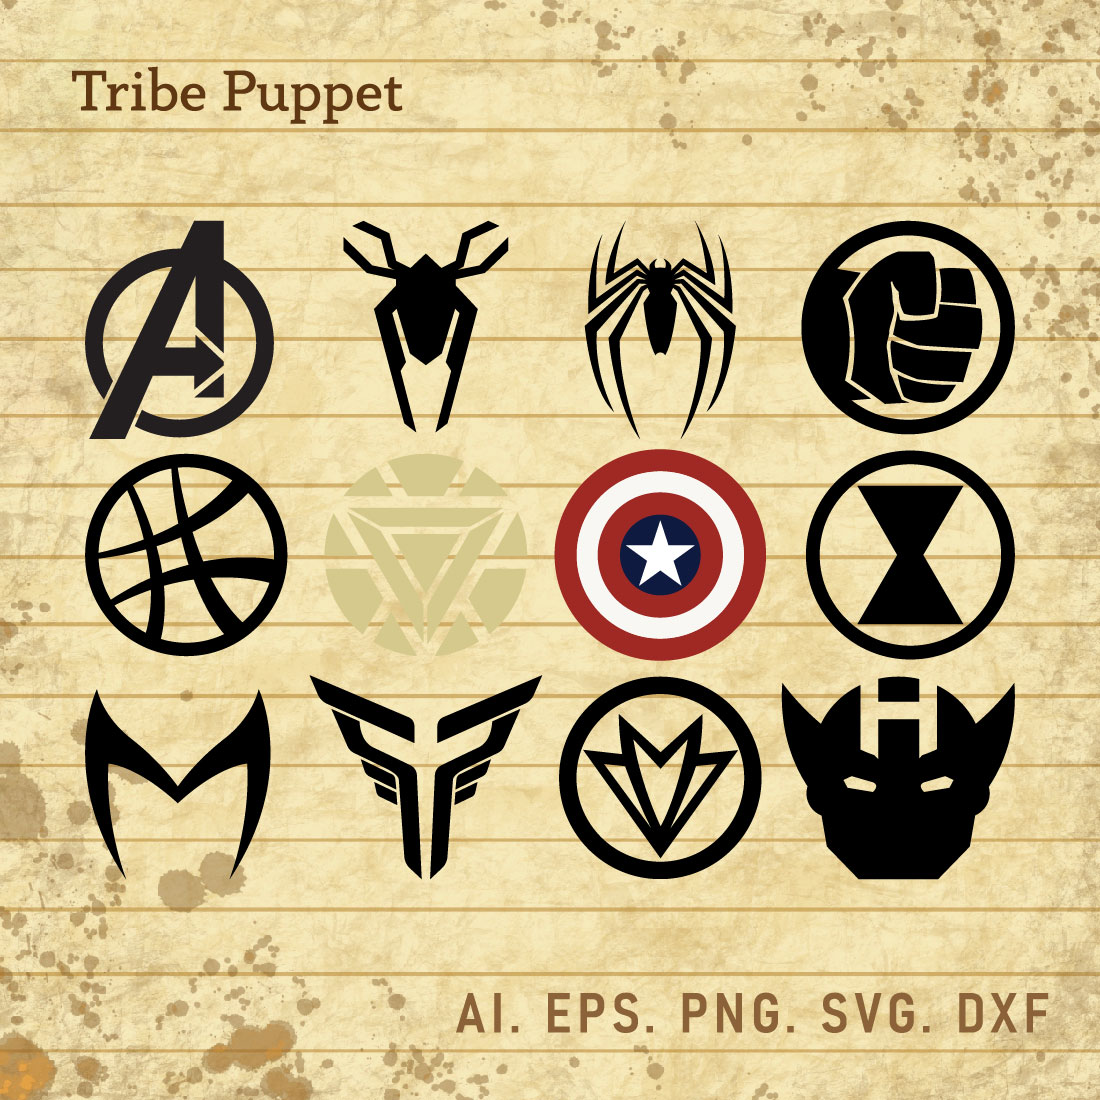 Avengers logo HD wallpapers | Pxfuel